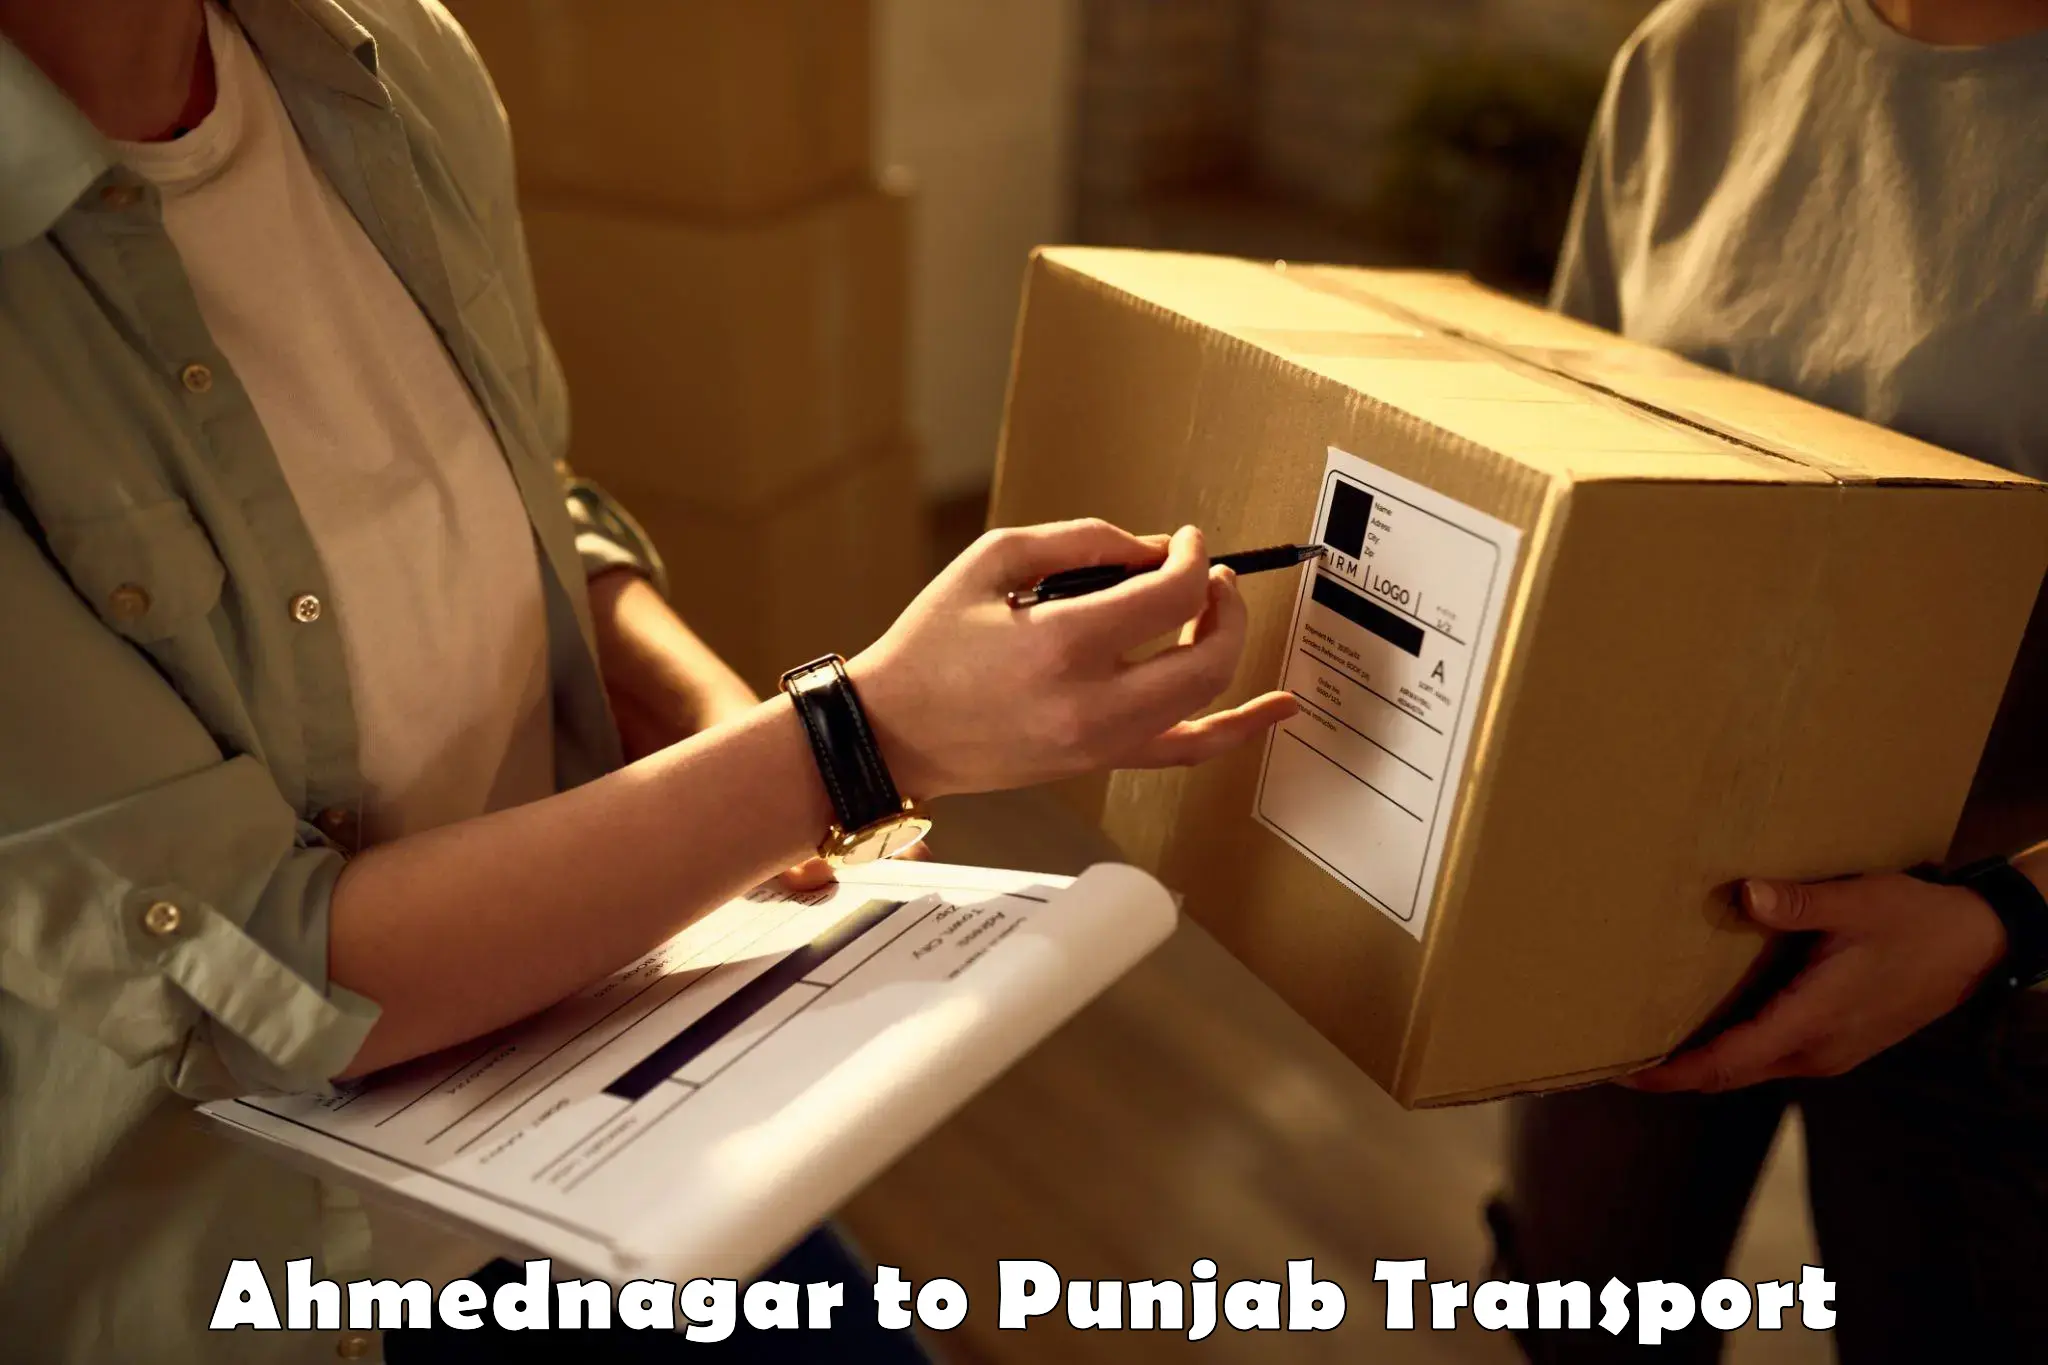 Furniture transport service Ahmednagar to Machhiwara